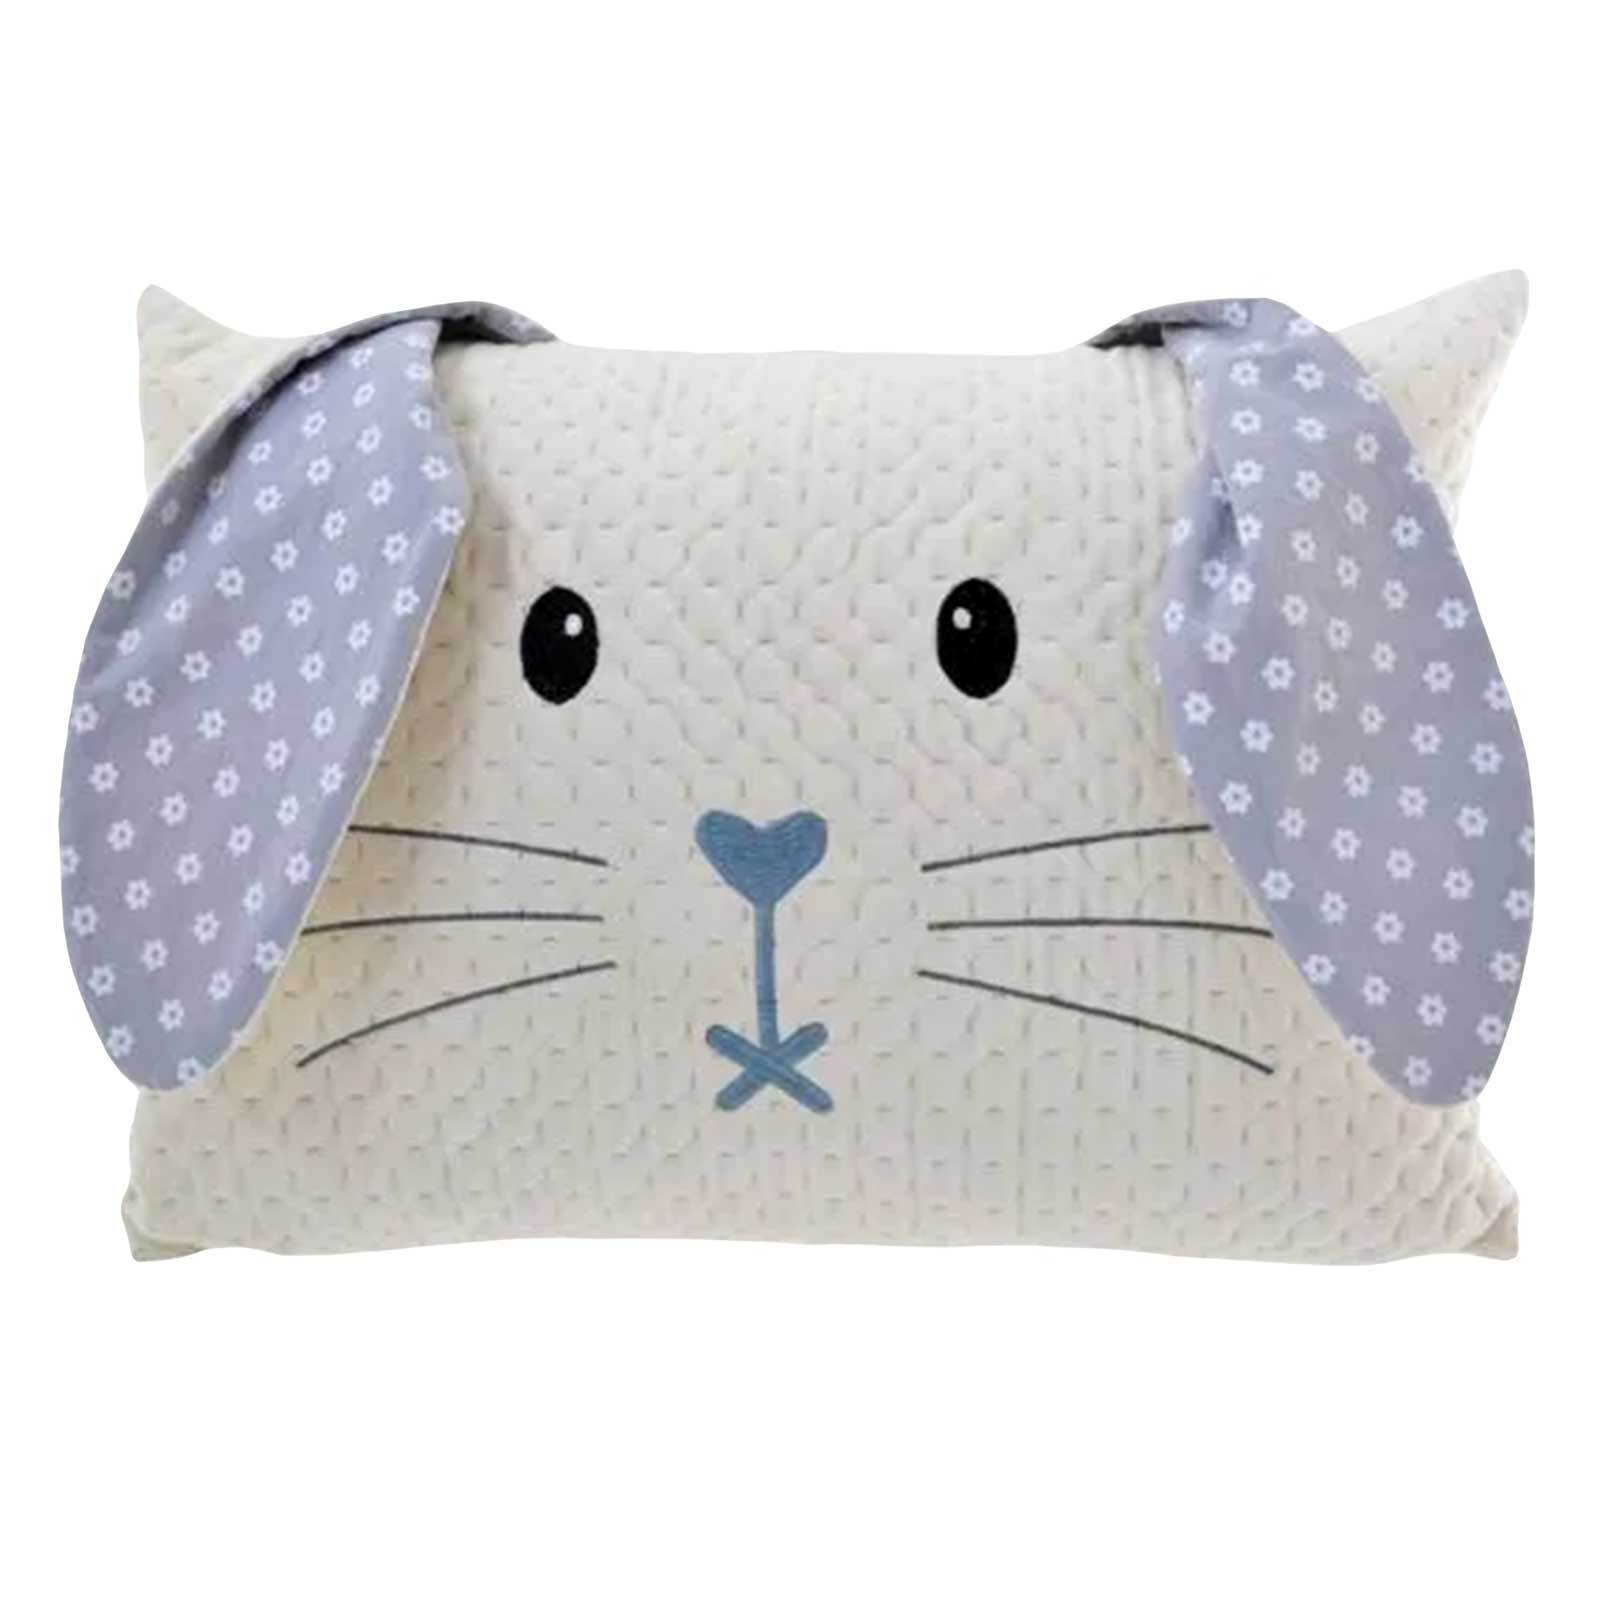 Blue Bunny Rabbit Plush Cushion